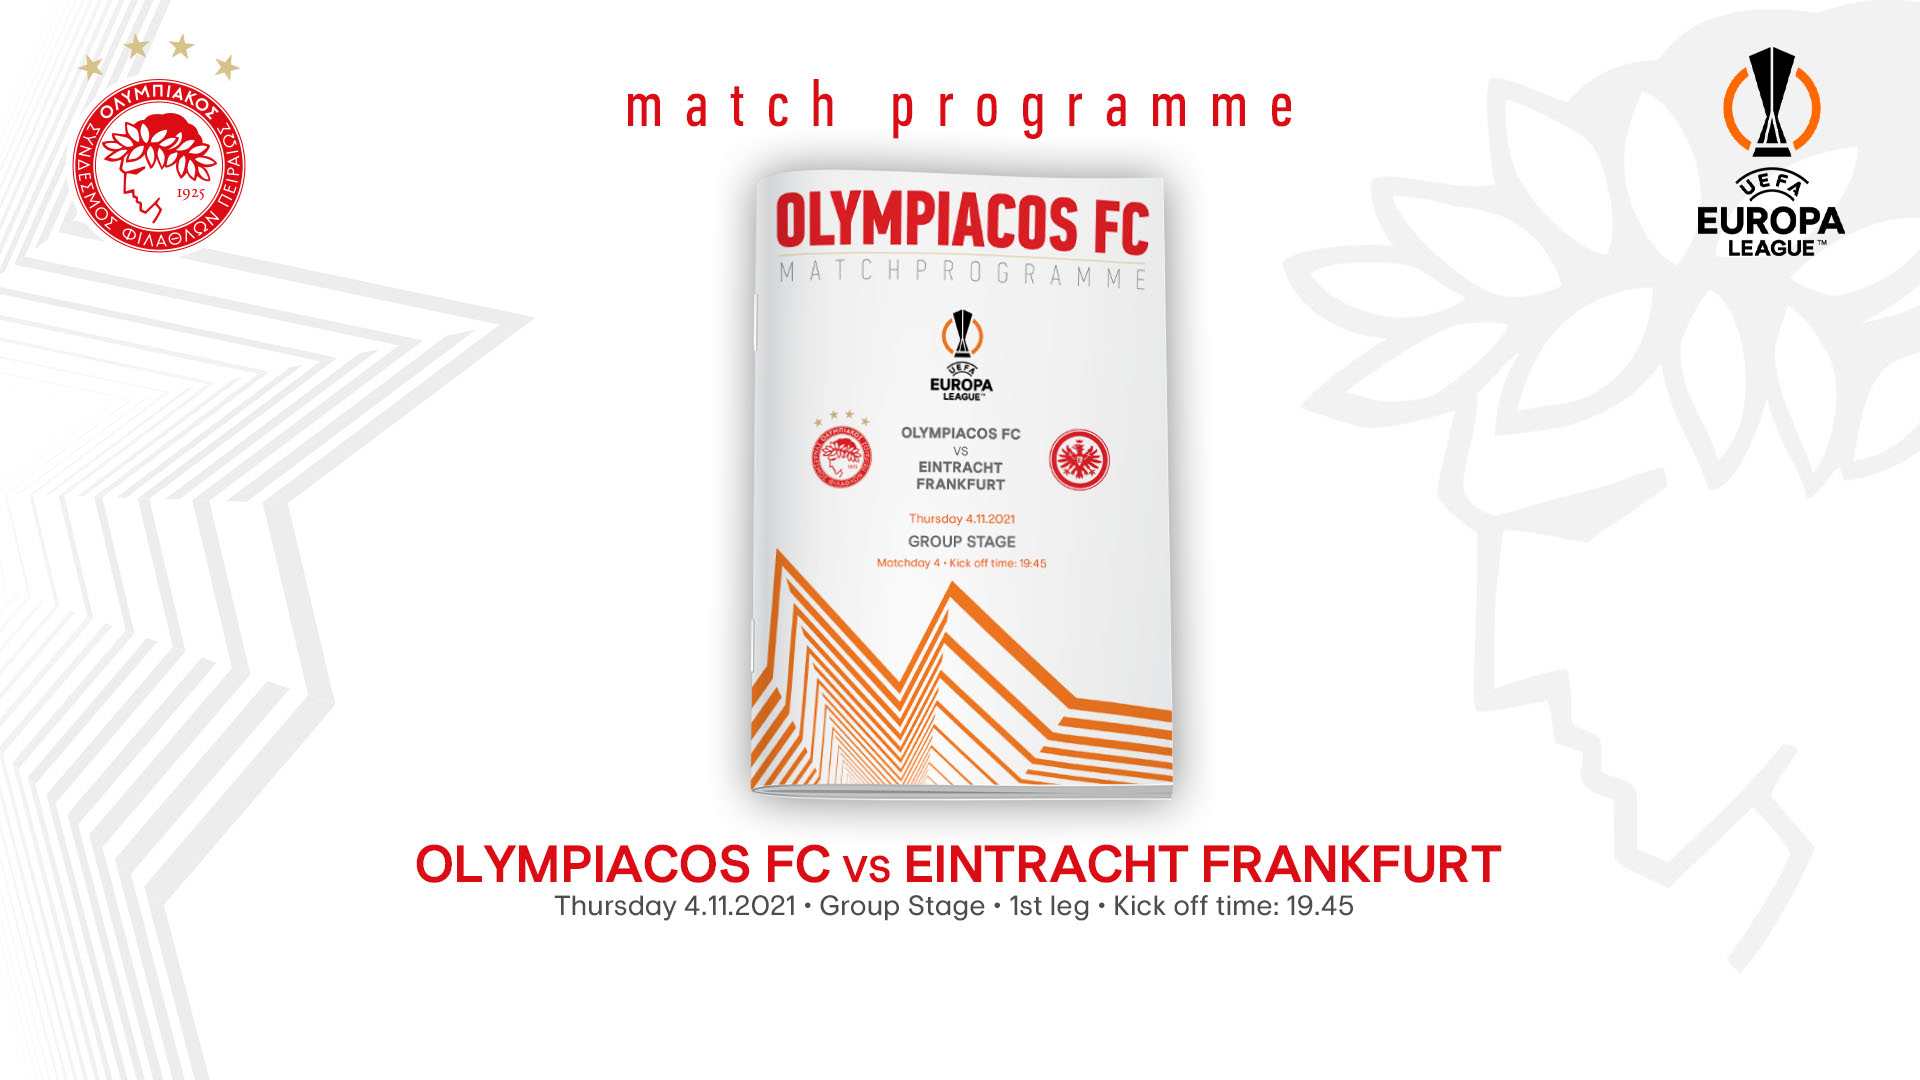 Match Programme Ολυμπιακός-Άιντραχτ Φρανκφούρτης